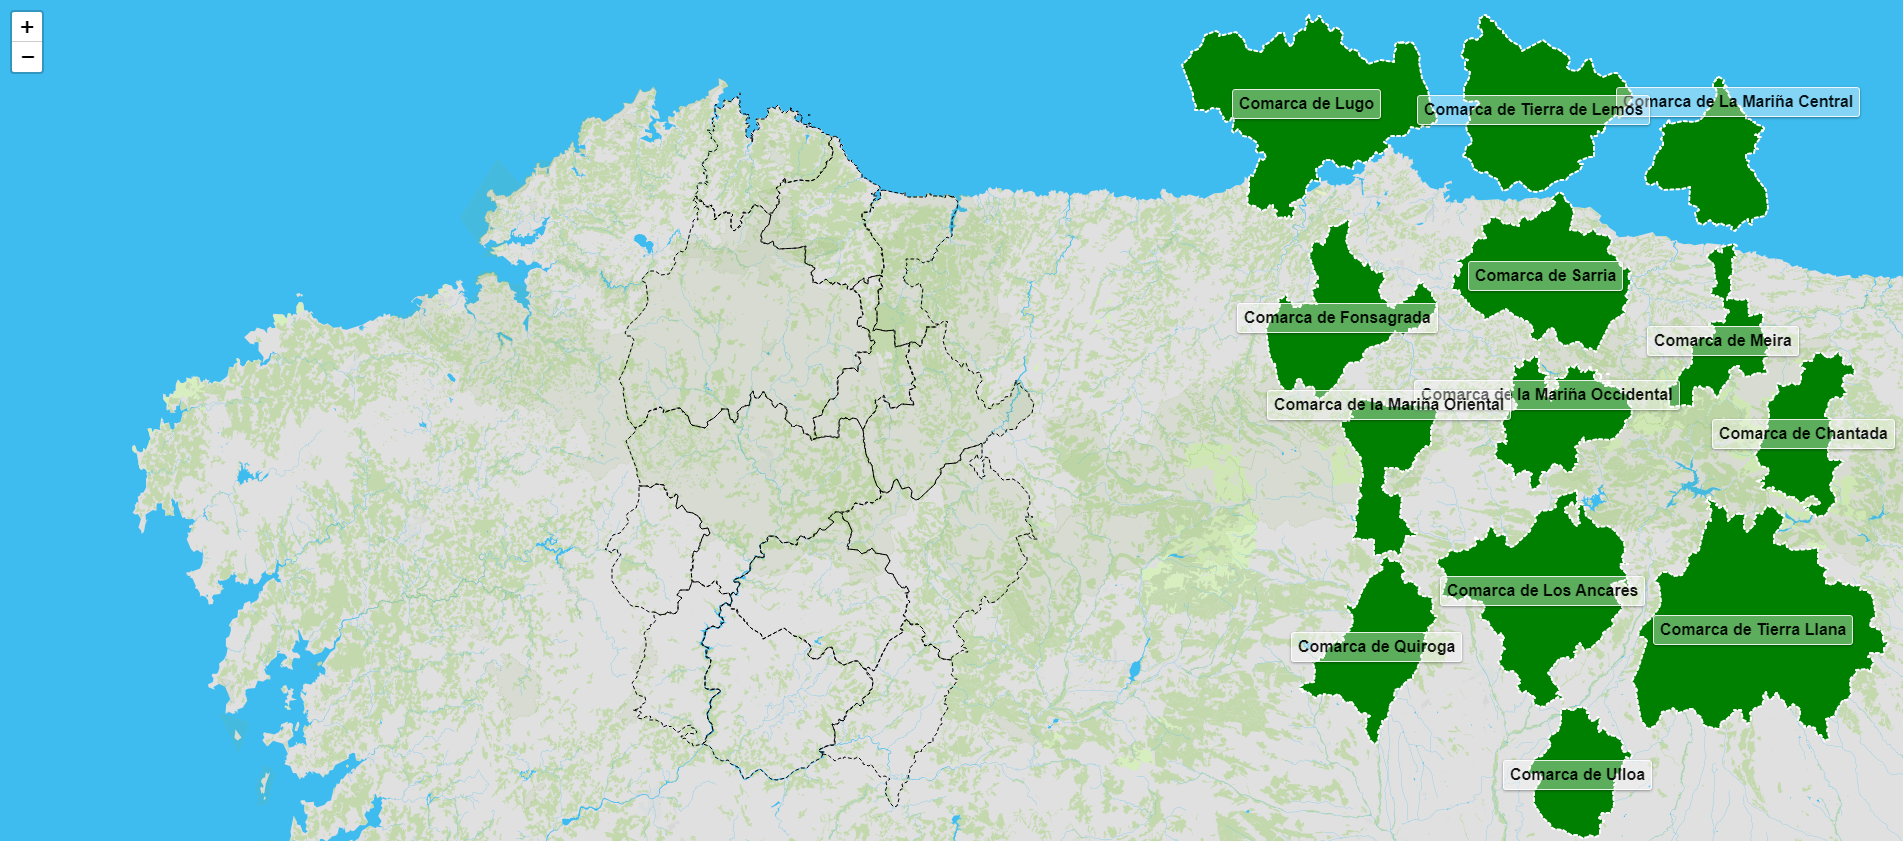 Comarcas de la provincia de Lugo